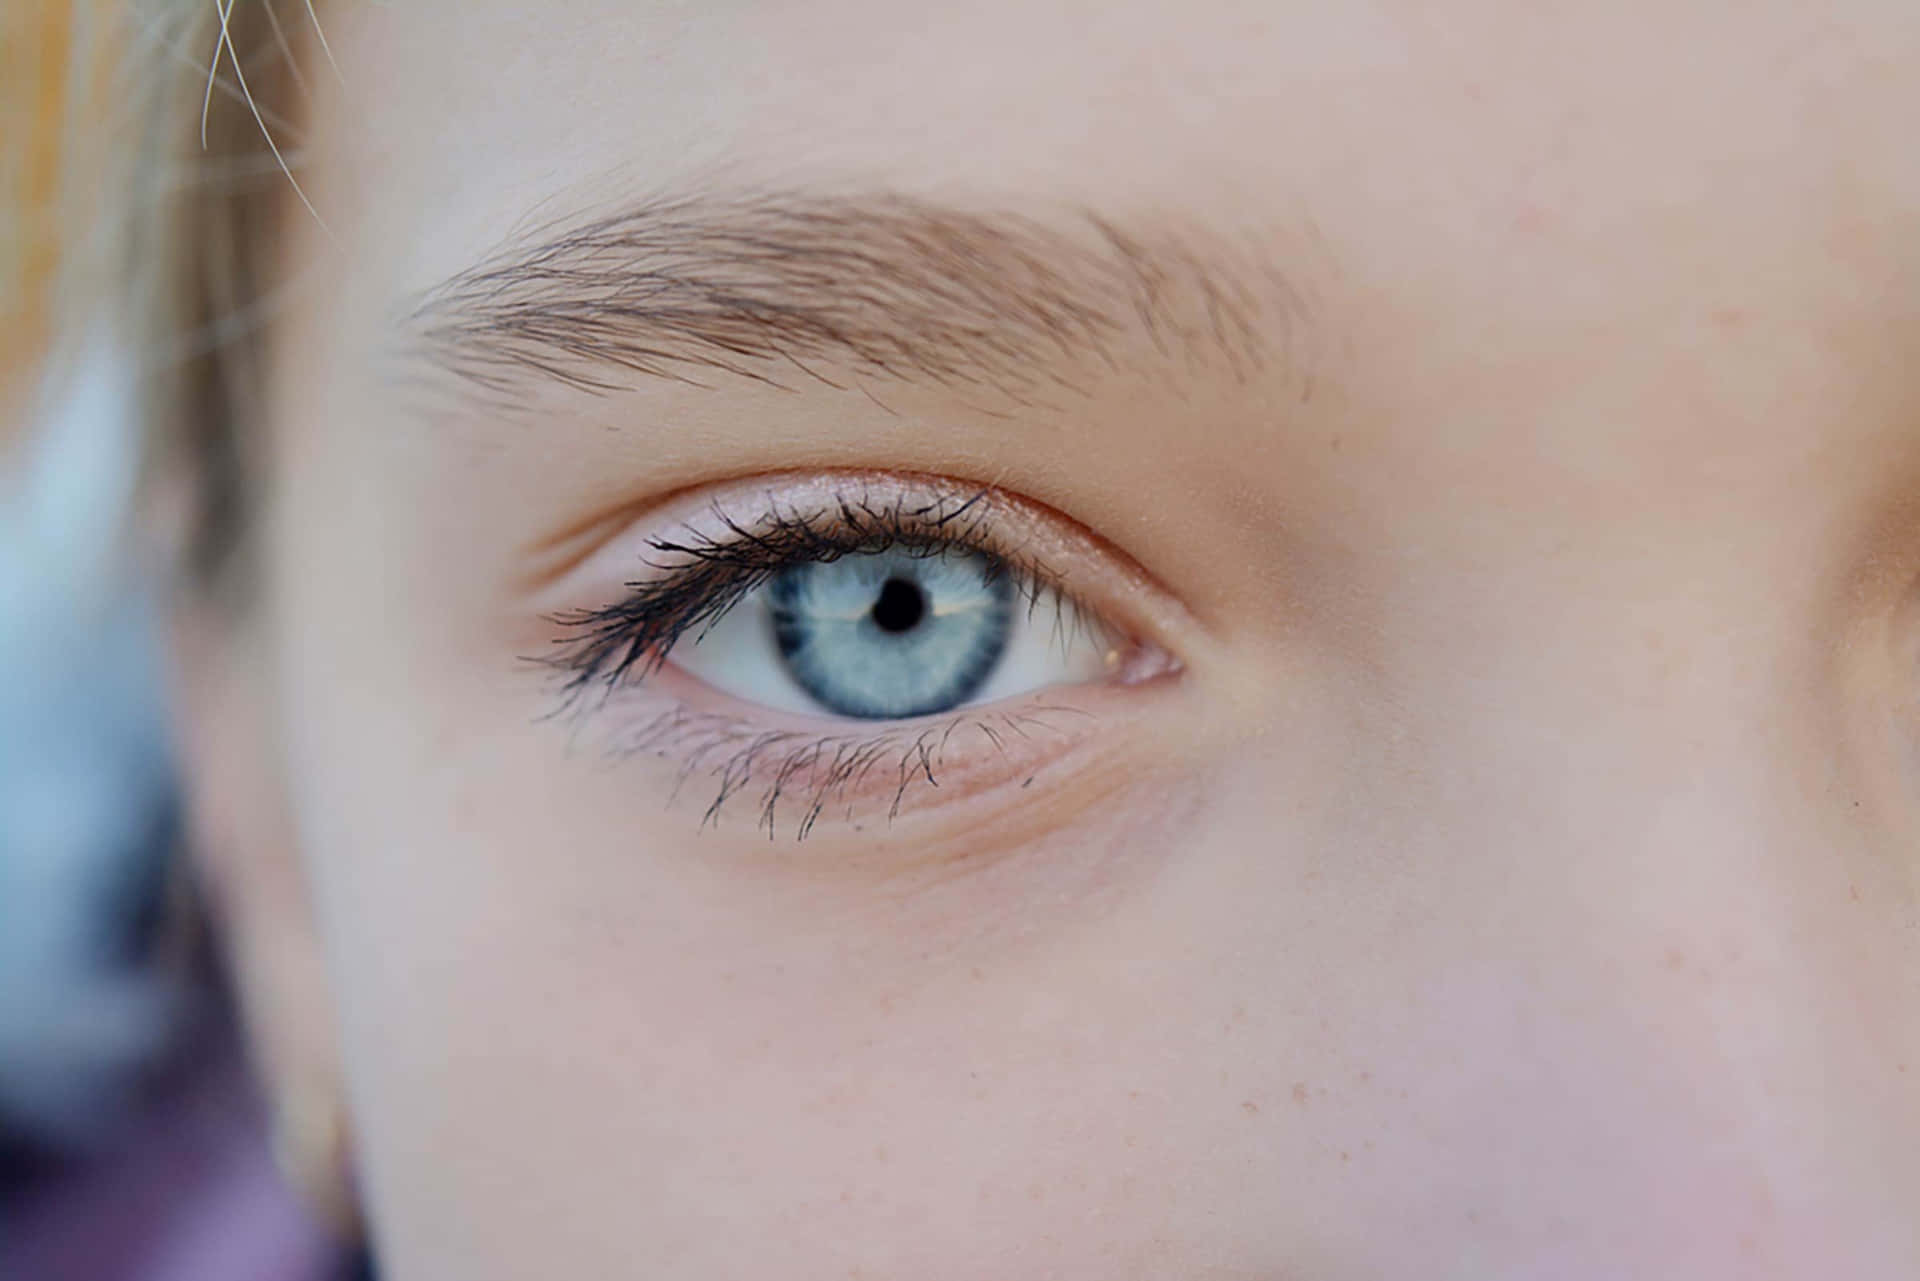 Etnærbillede Af En Ung Piges Blå Øjne.